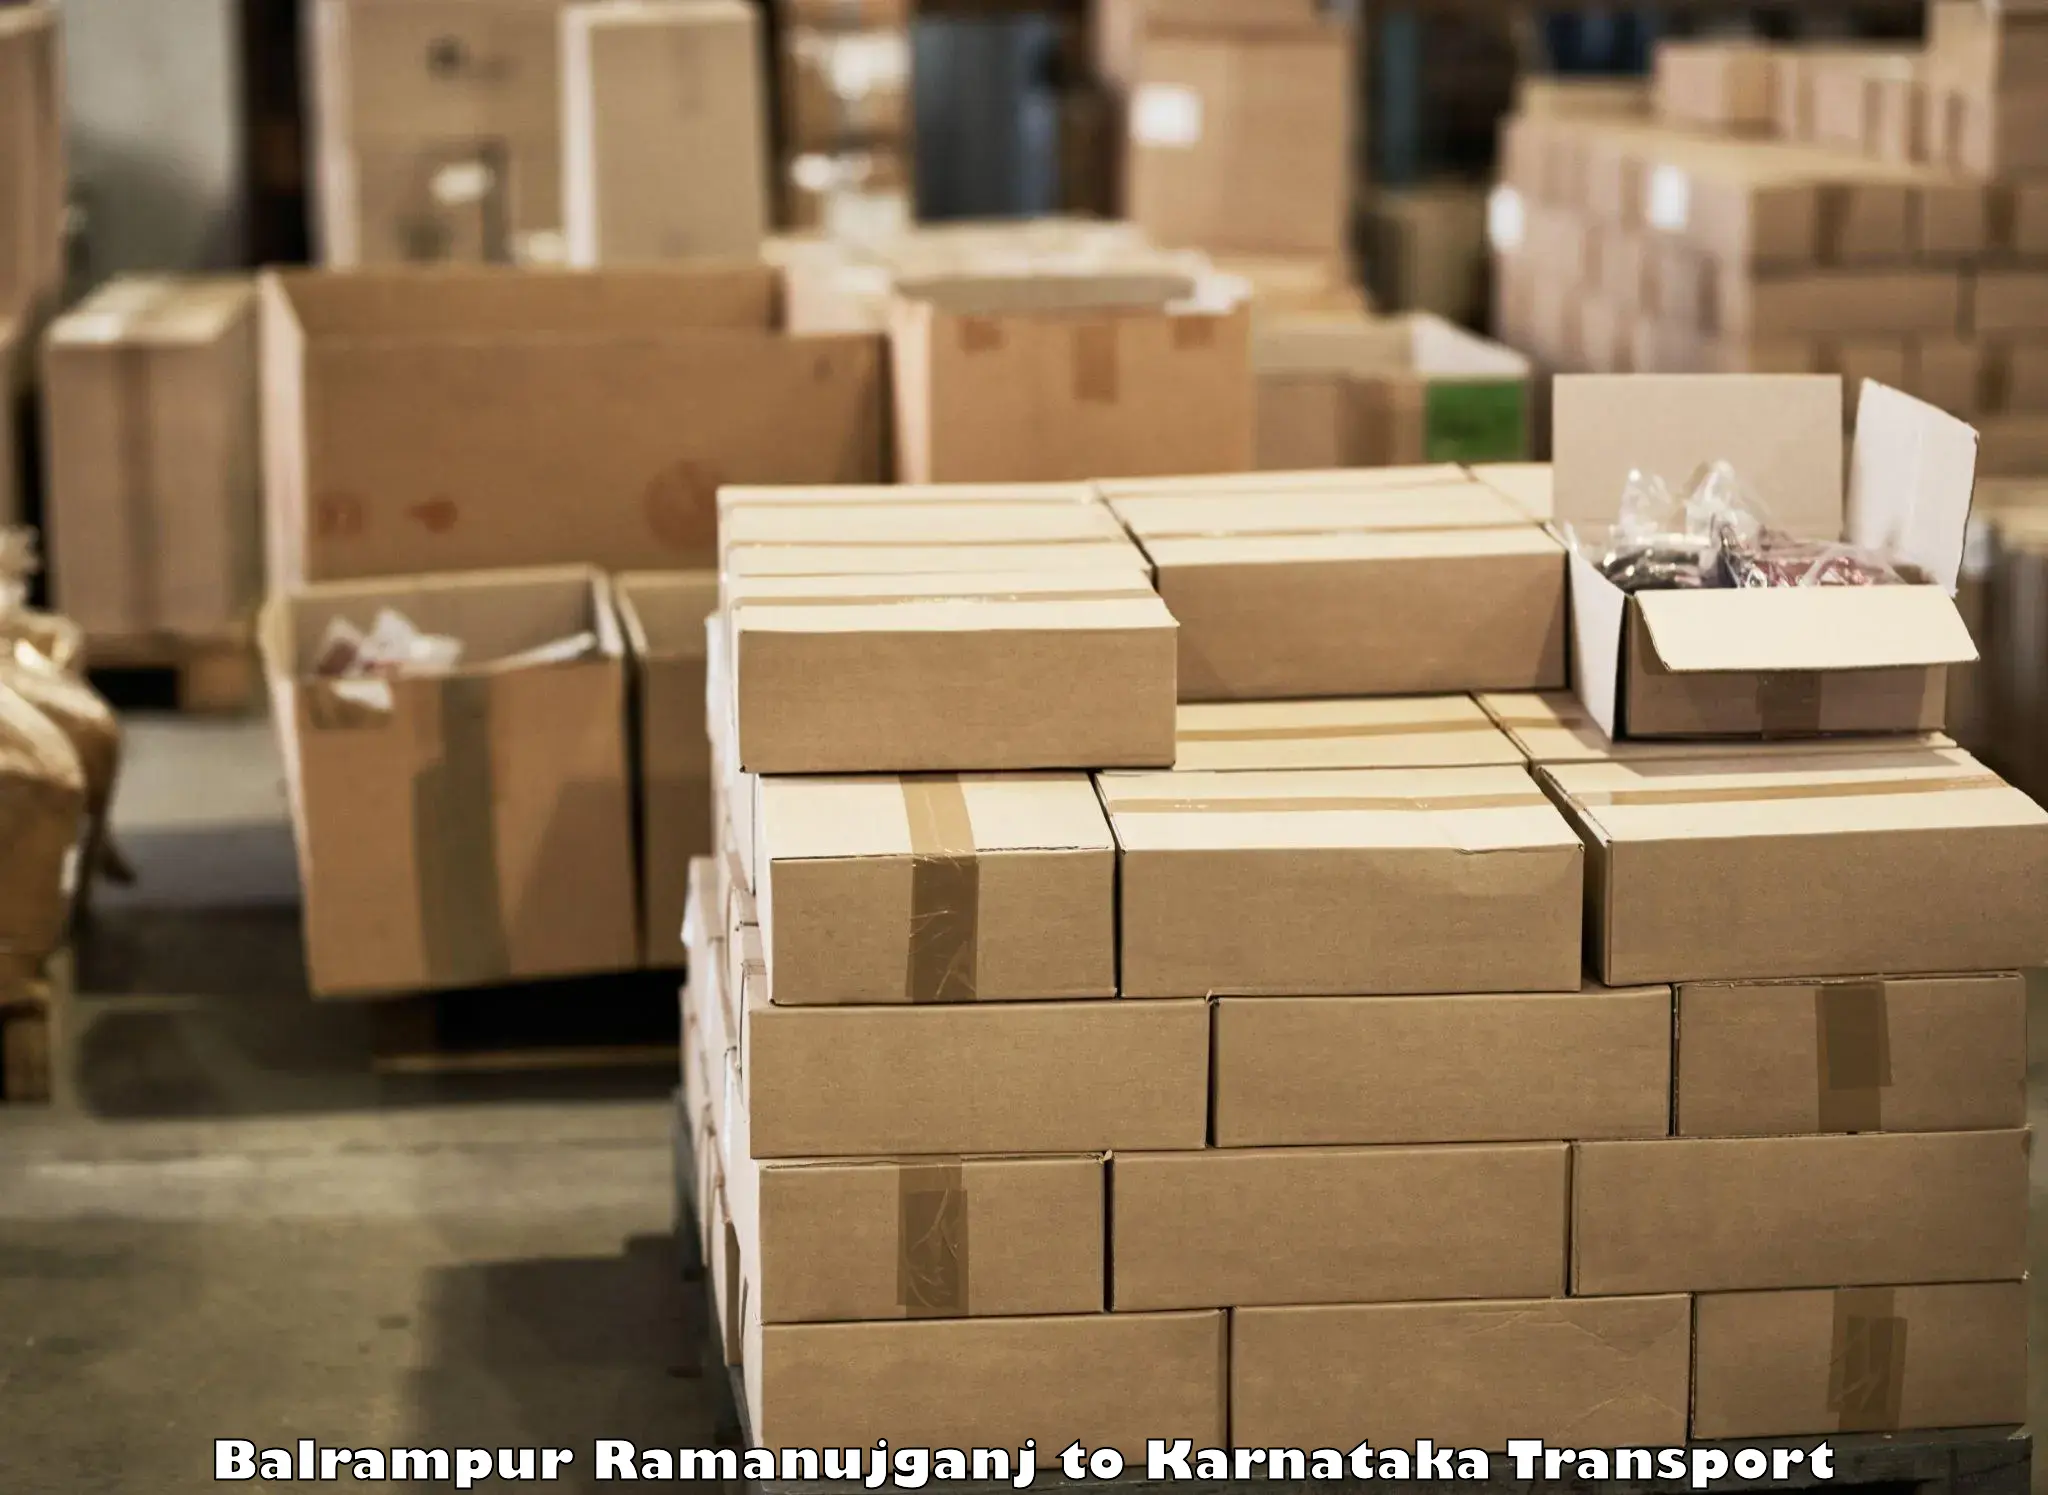 Cargo transport services Balrampur Ramanujganj to Karnataka